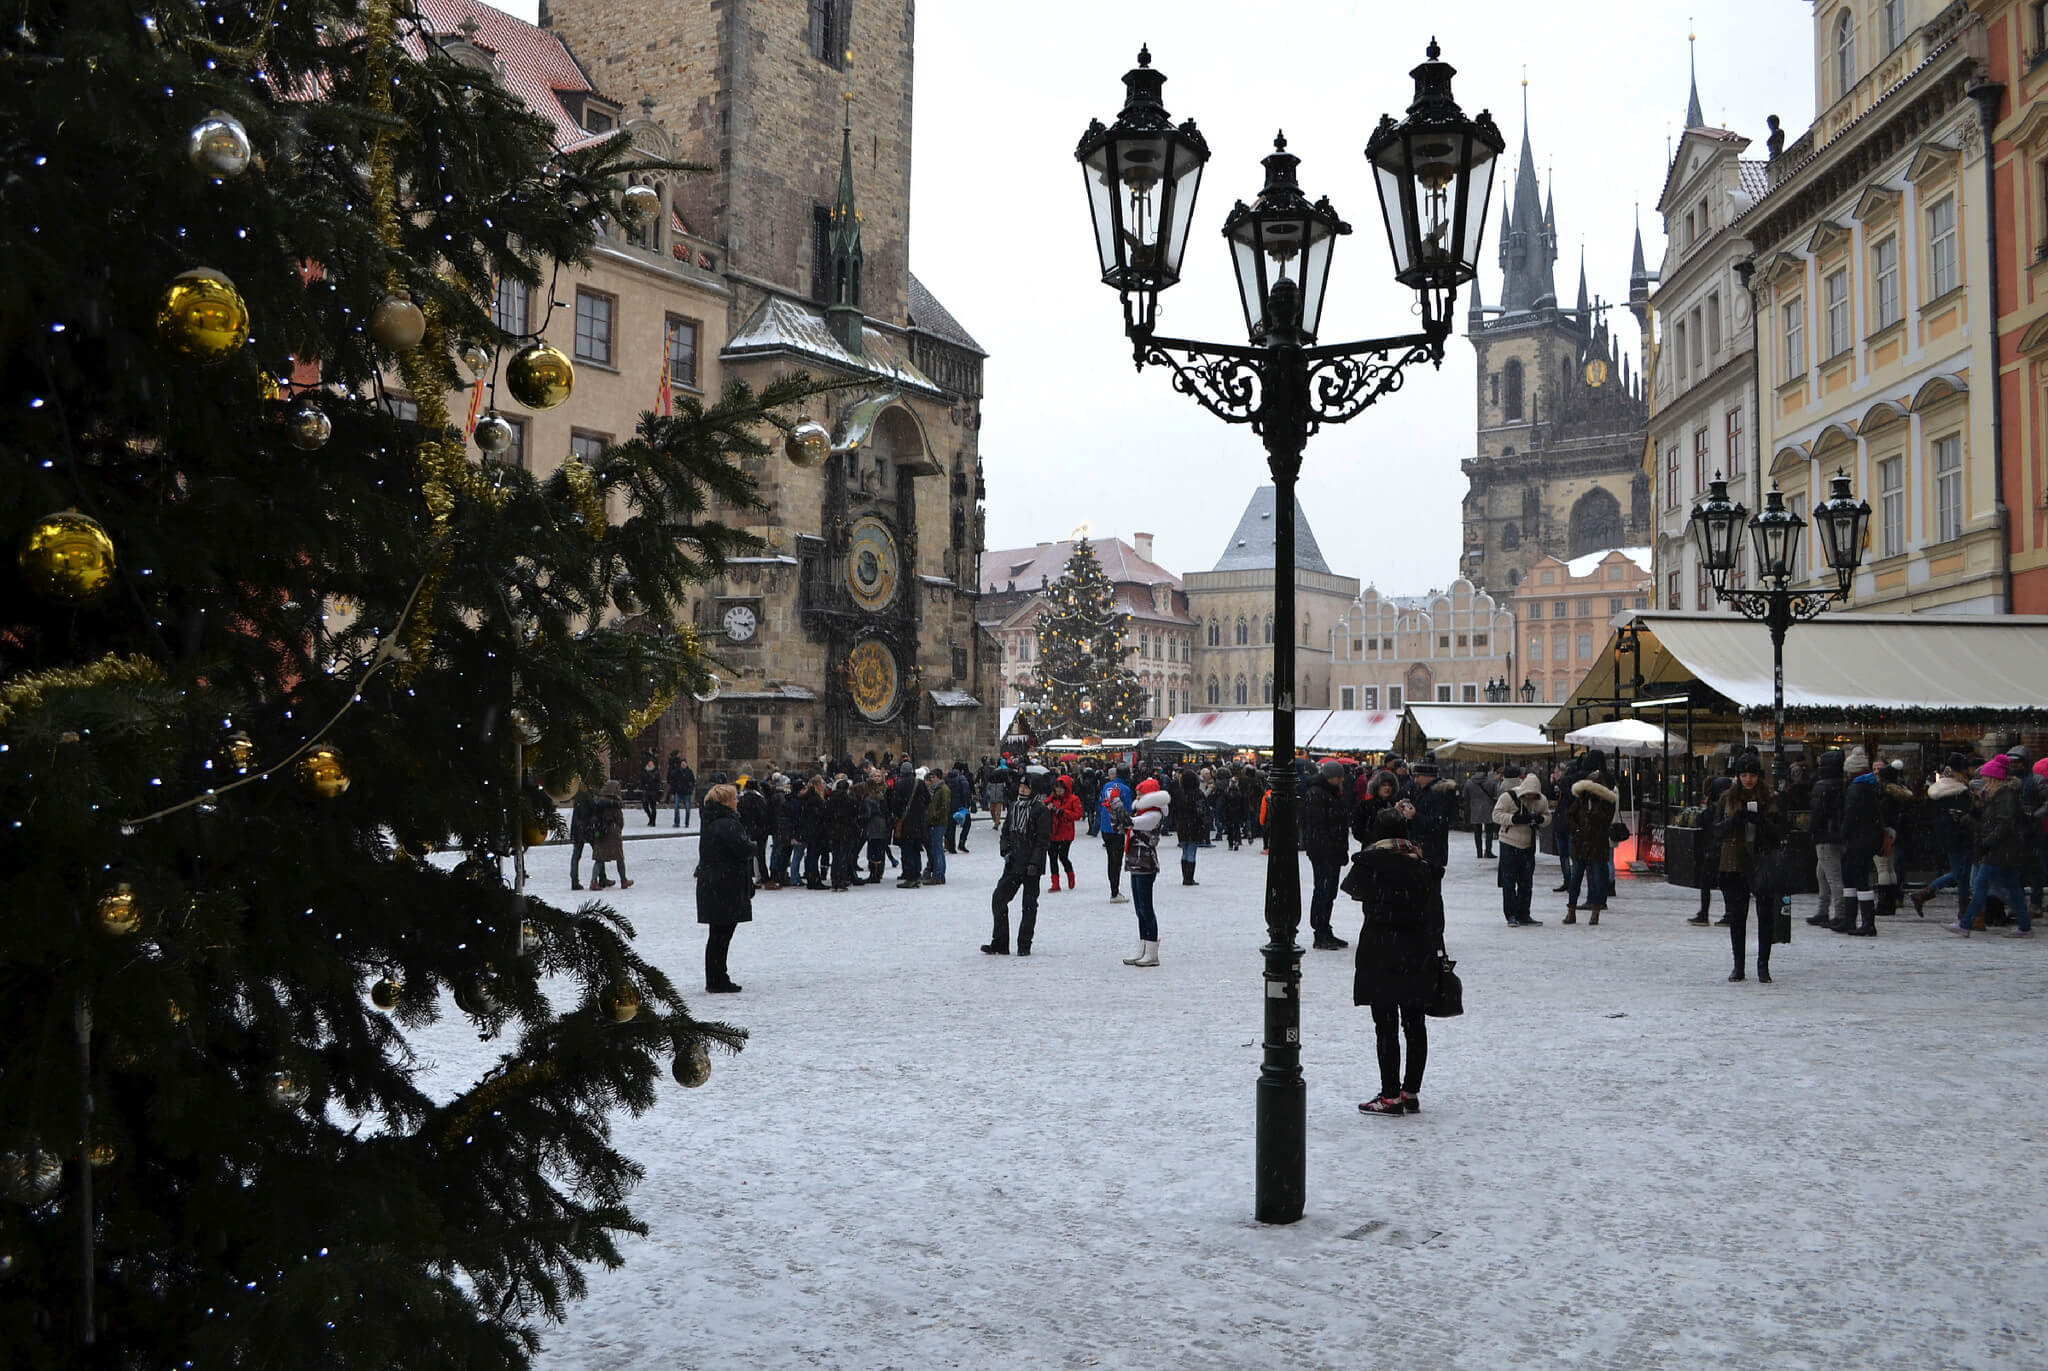 Prague Christmas markets